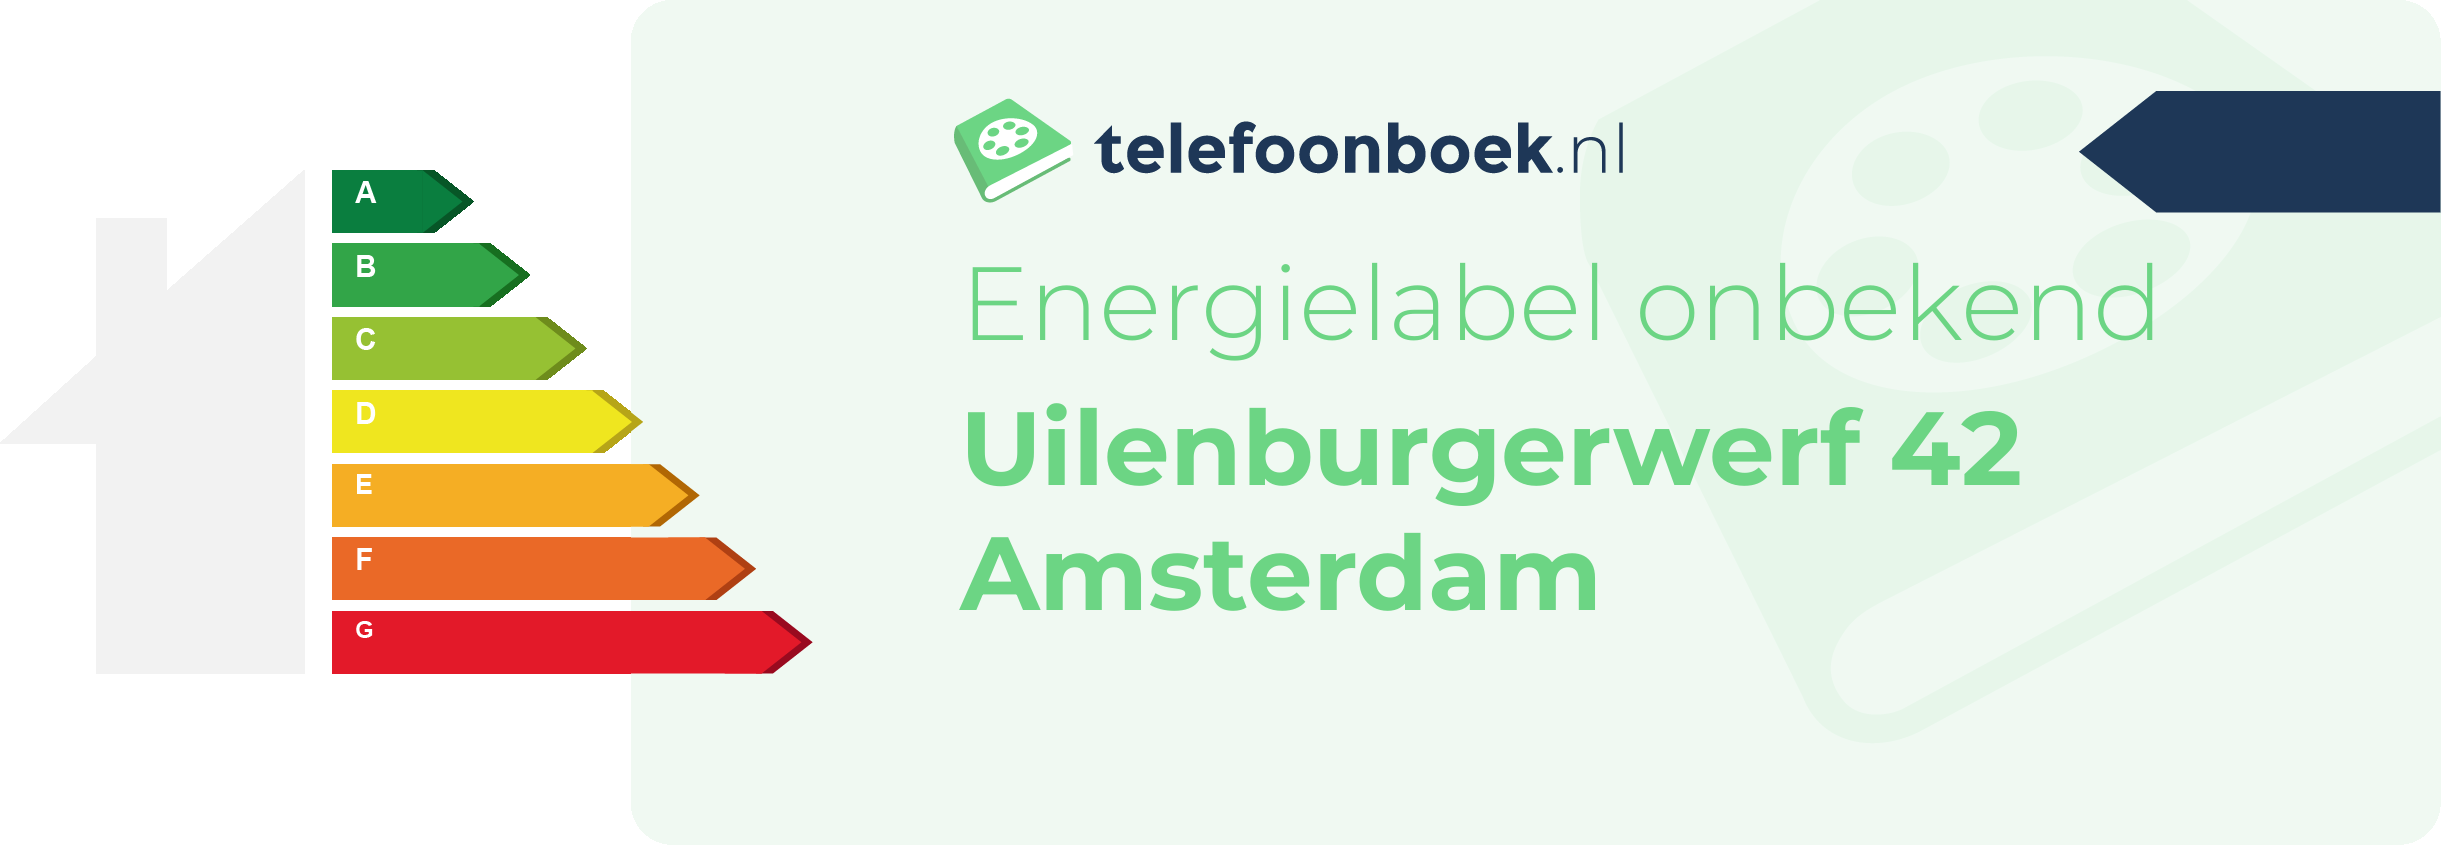 Energielabel Uilenburgerwerf 42 Amsterdam